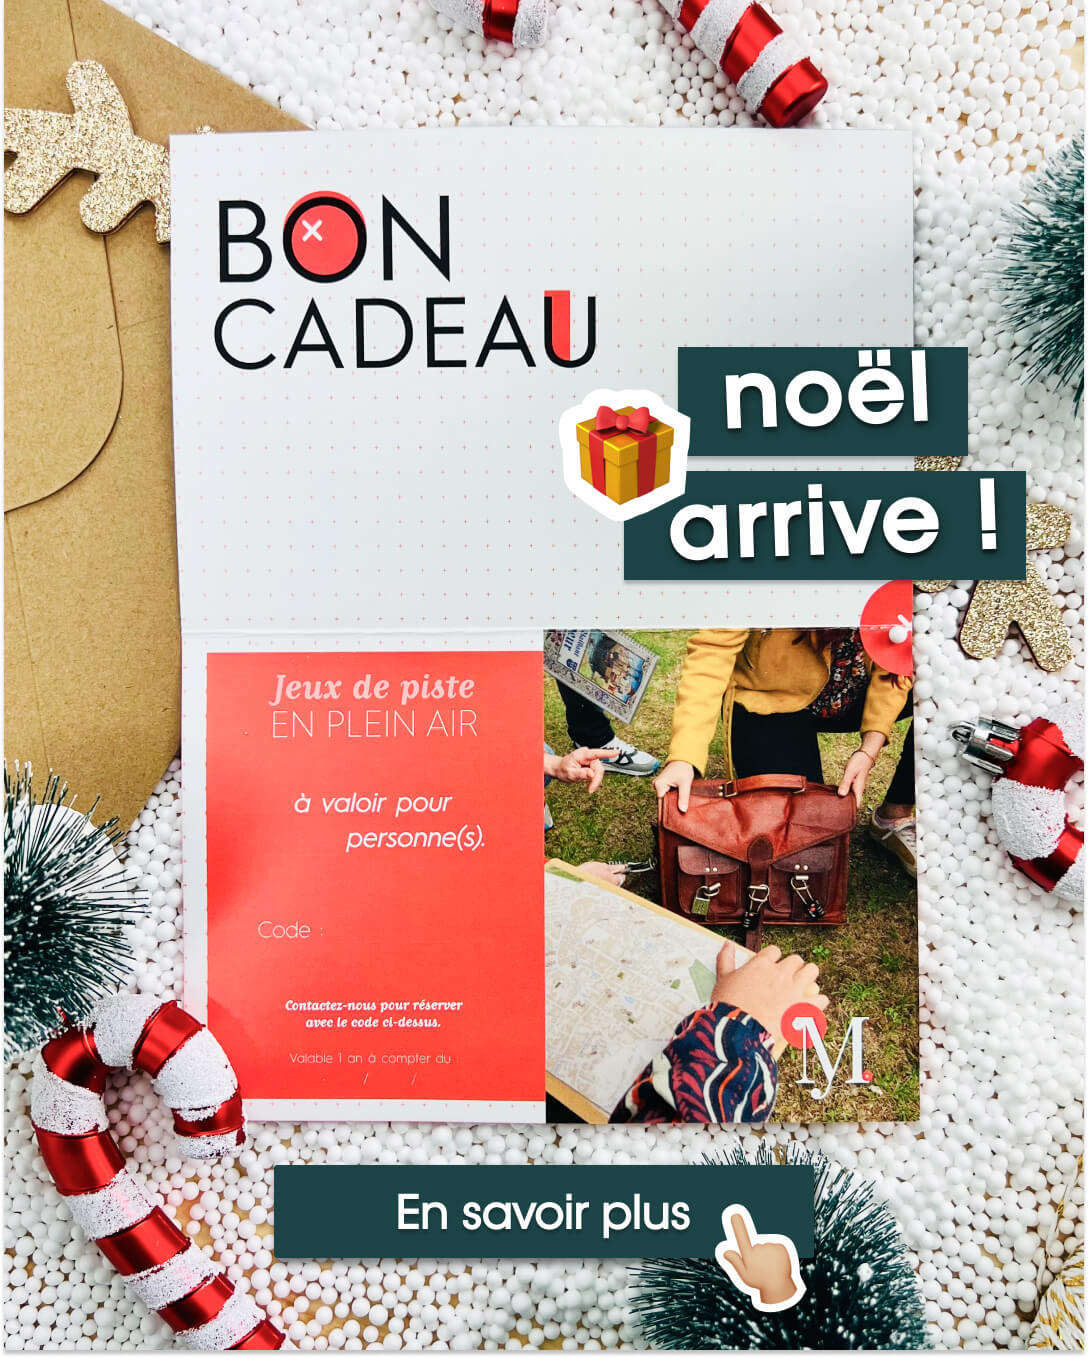 Cliquez sur l'image pour découvrir nos bons cadeaux, une idée originale pour préparer Noël dès maintenant et en offrant un moment en famille ou entres amis à Bourges.